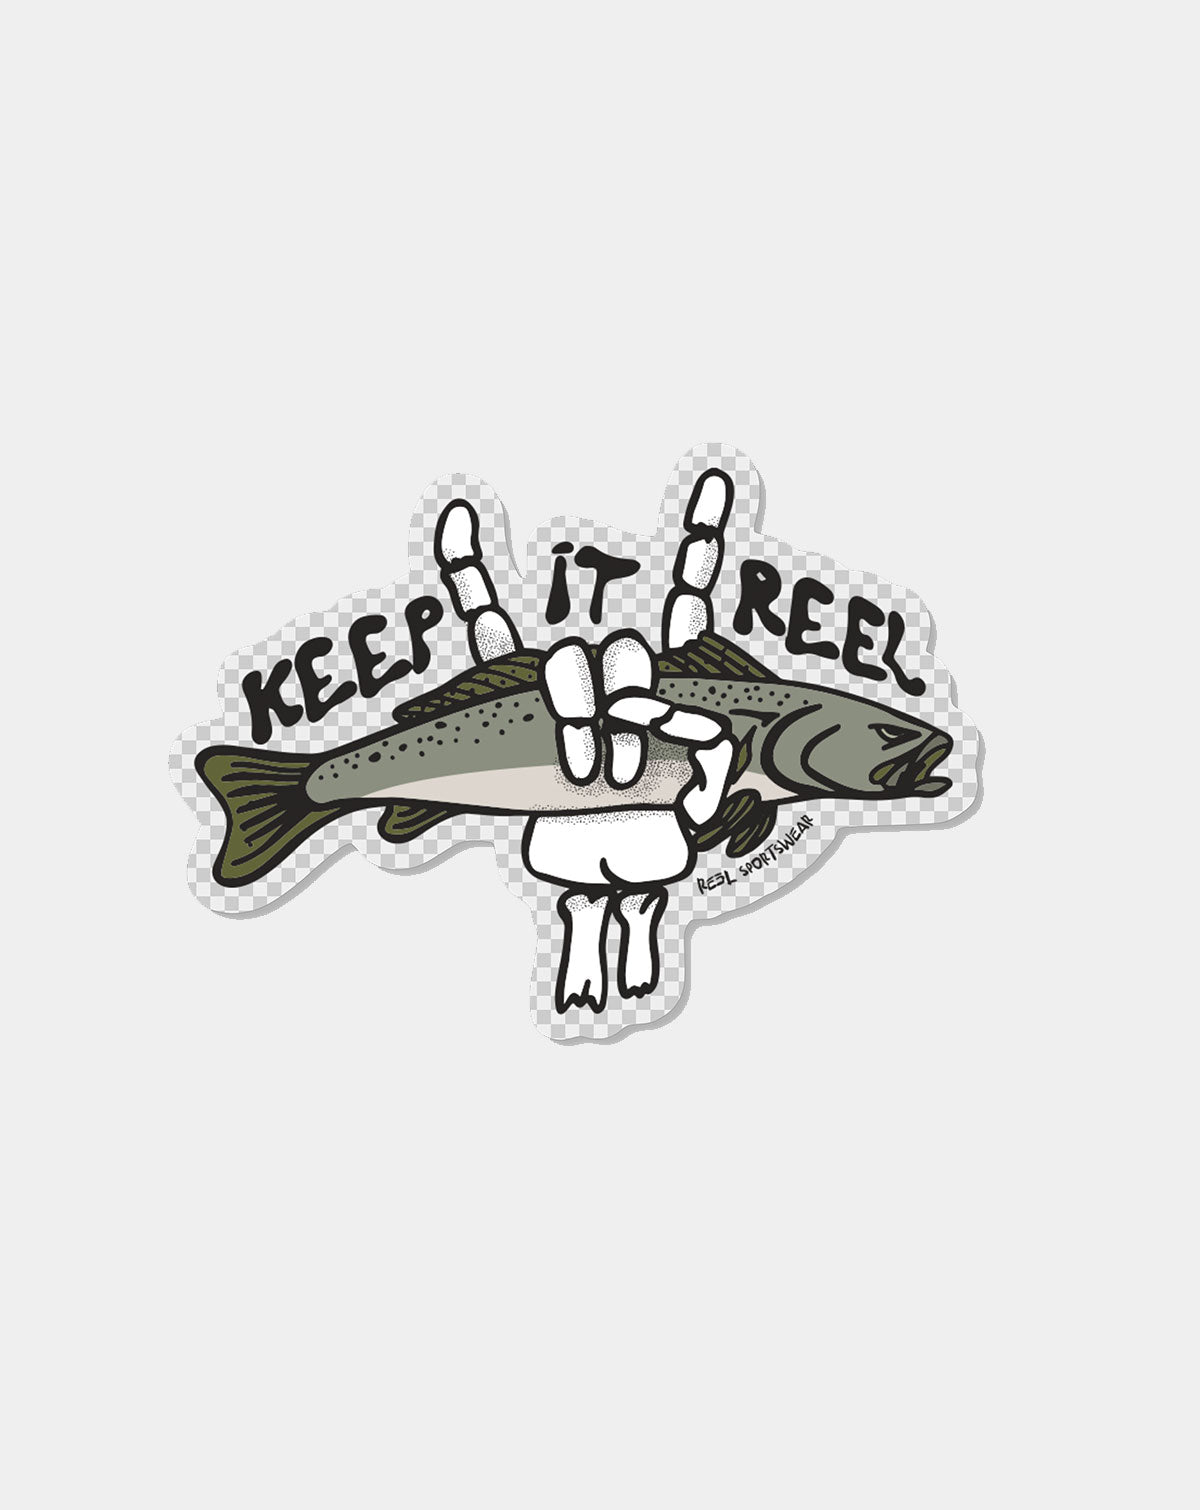 Keep it Reel - Trout - Reel Sportswear